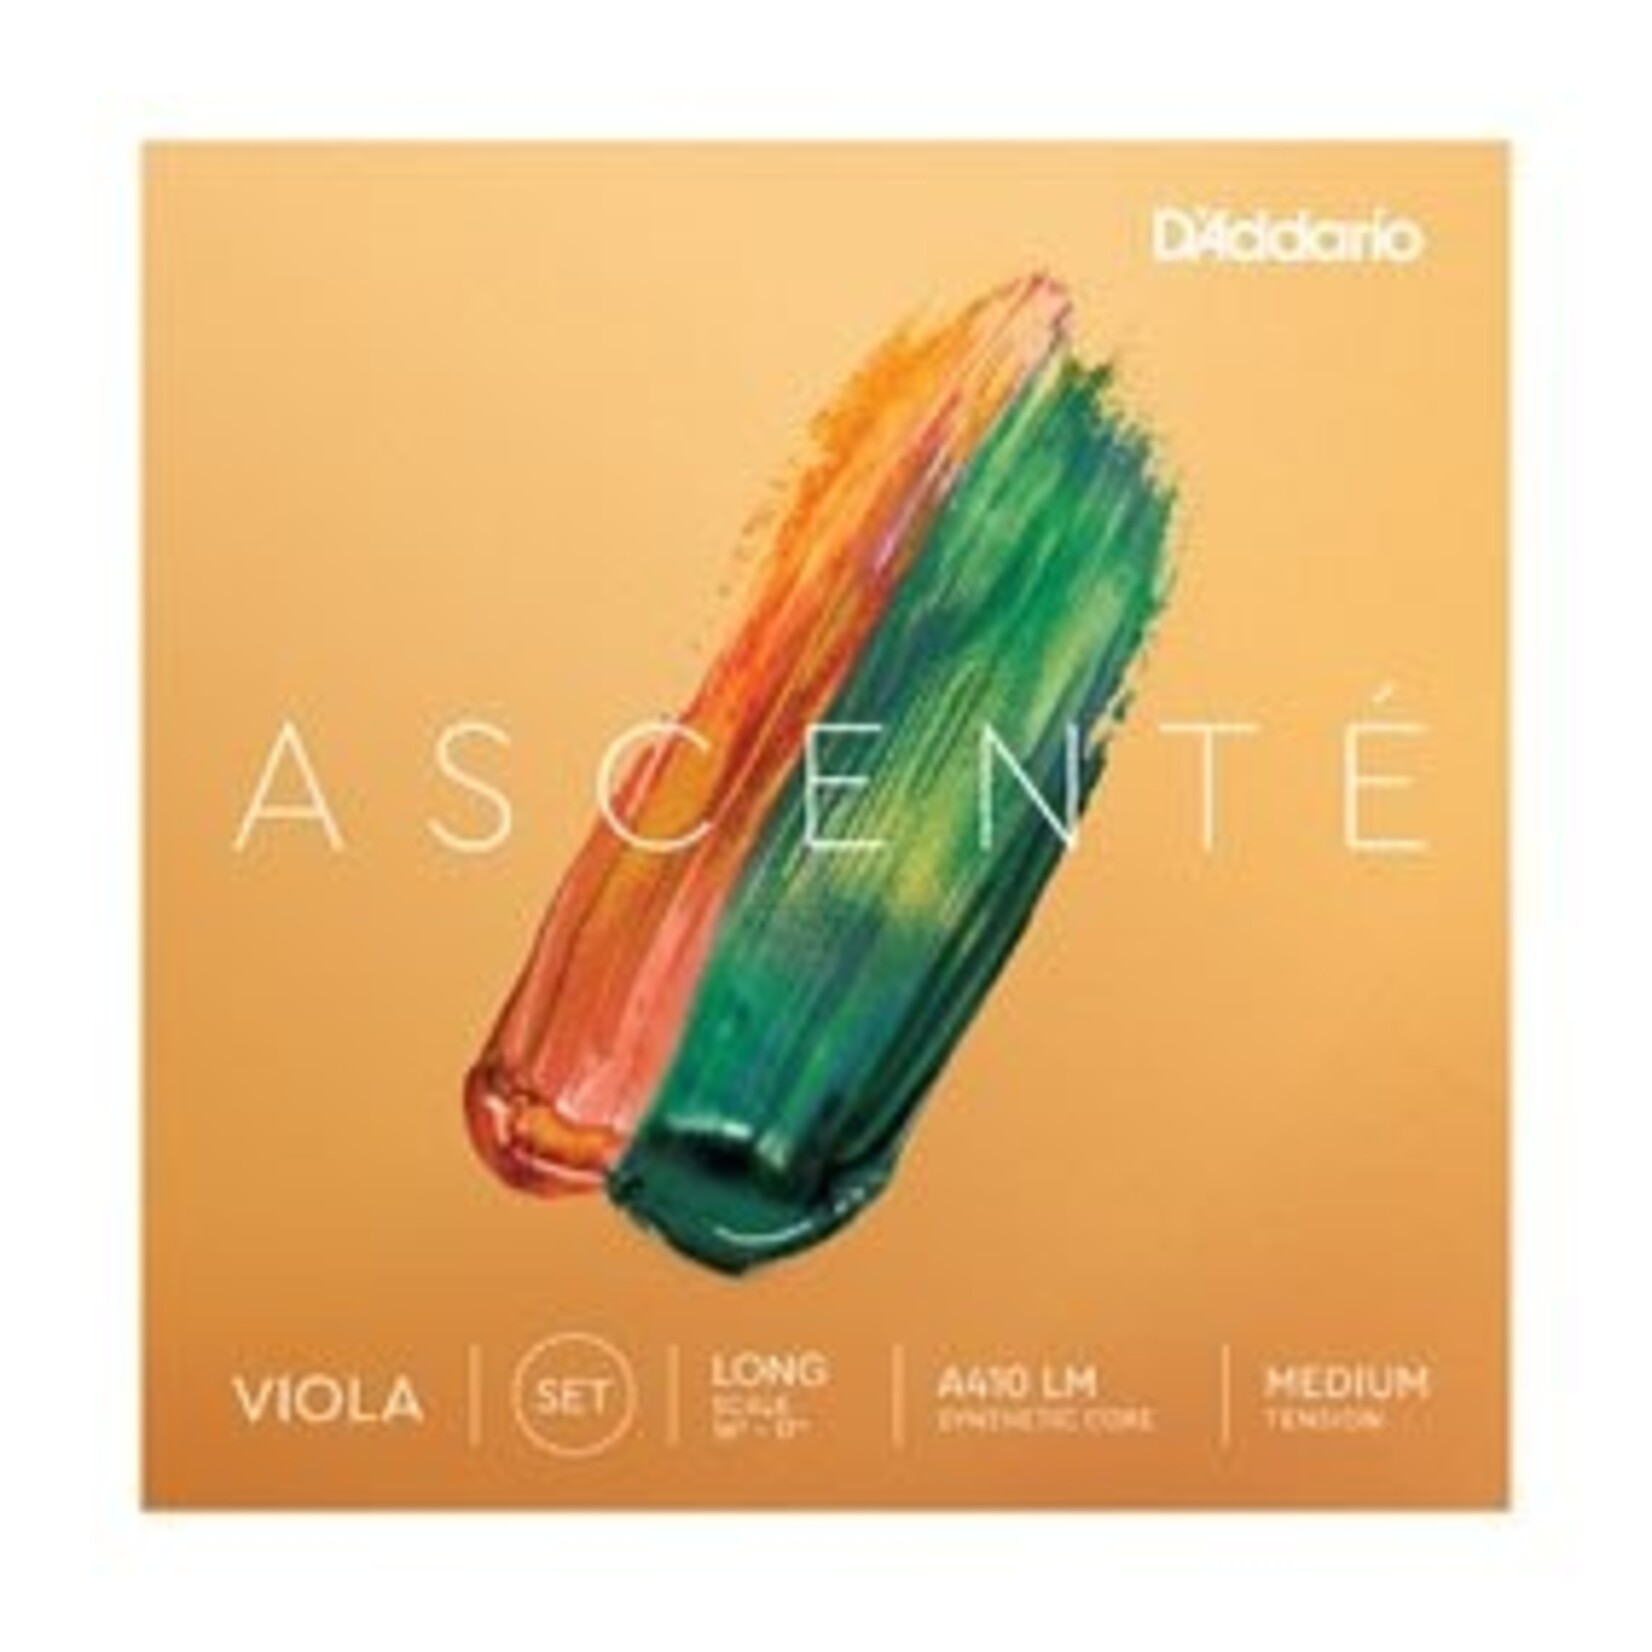 D'addario Ascente 15"-16" Viola Medium Tension Viola